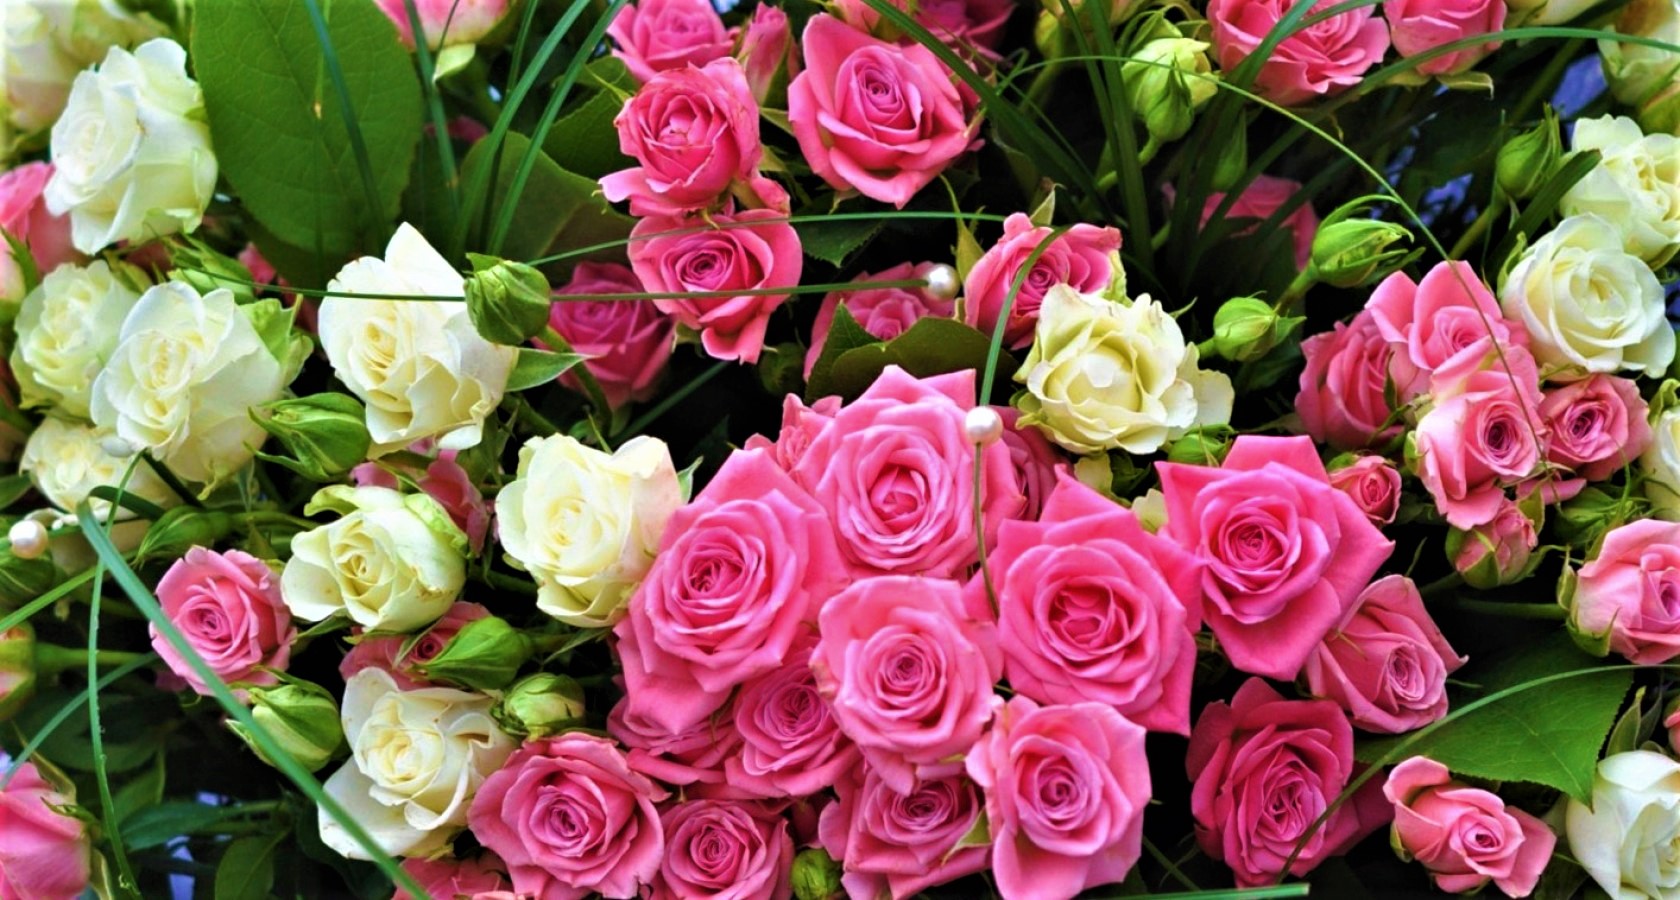 Скачать обои бесплатно Цветок, Роза, Белый Цветок, Земля/природа, Розовый Цветок, Флауэрсы картинка на рабочий стол ПК